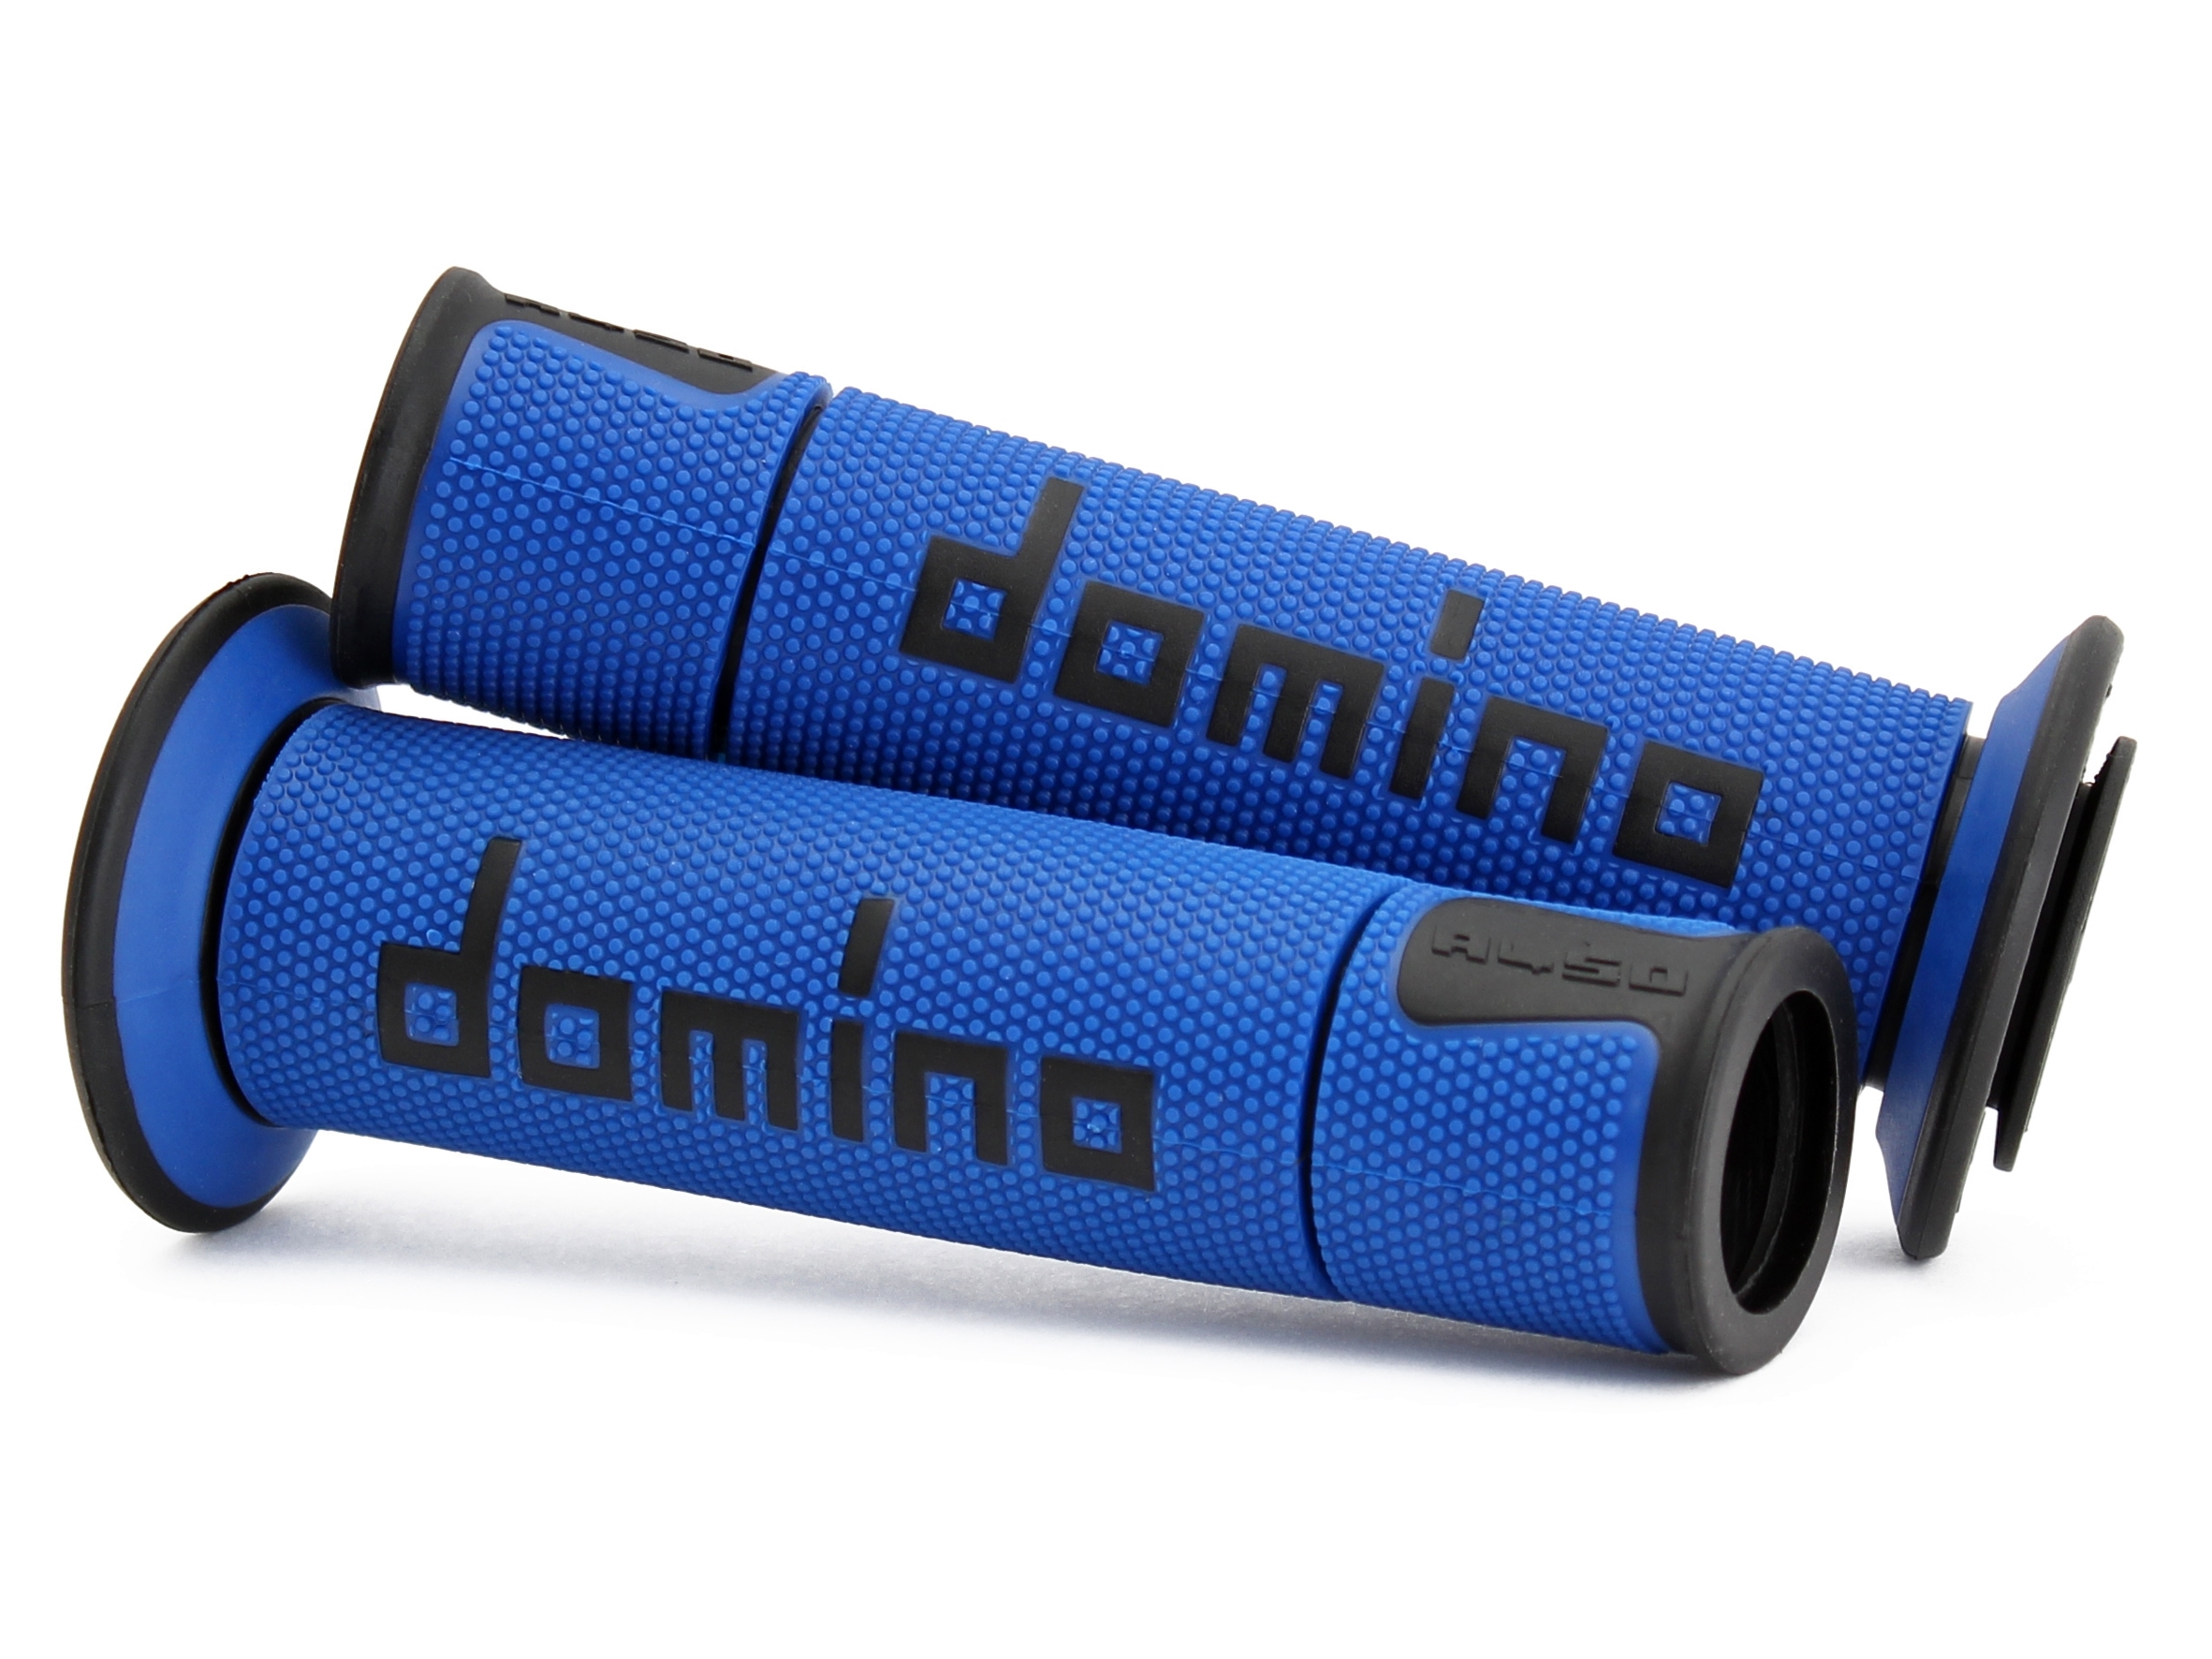 Coppia manopole Domino Road-Racing universale moto colore blu/rosso  120-125mm aperte A45041C4248B7-0